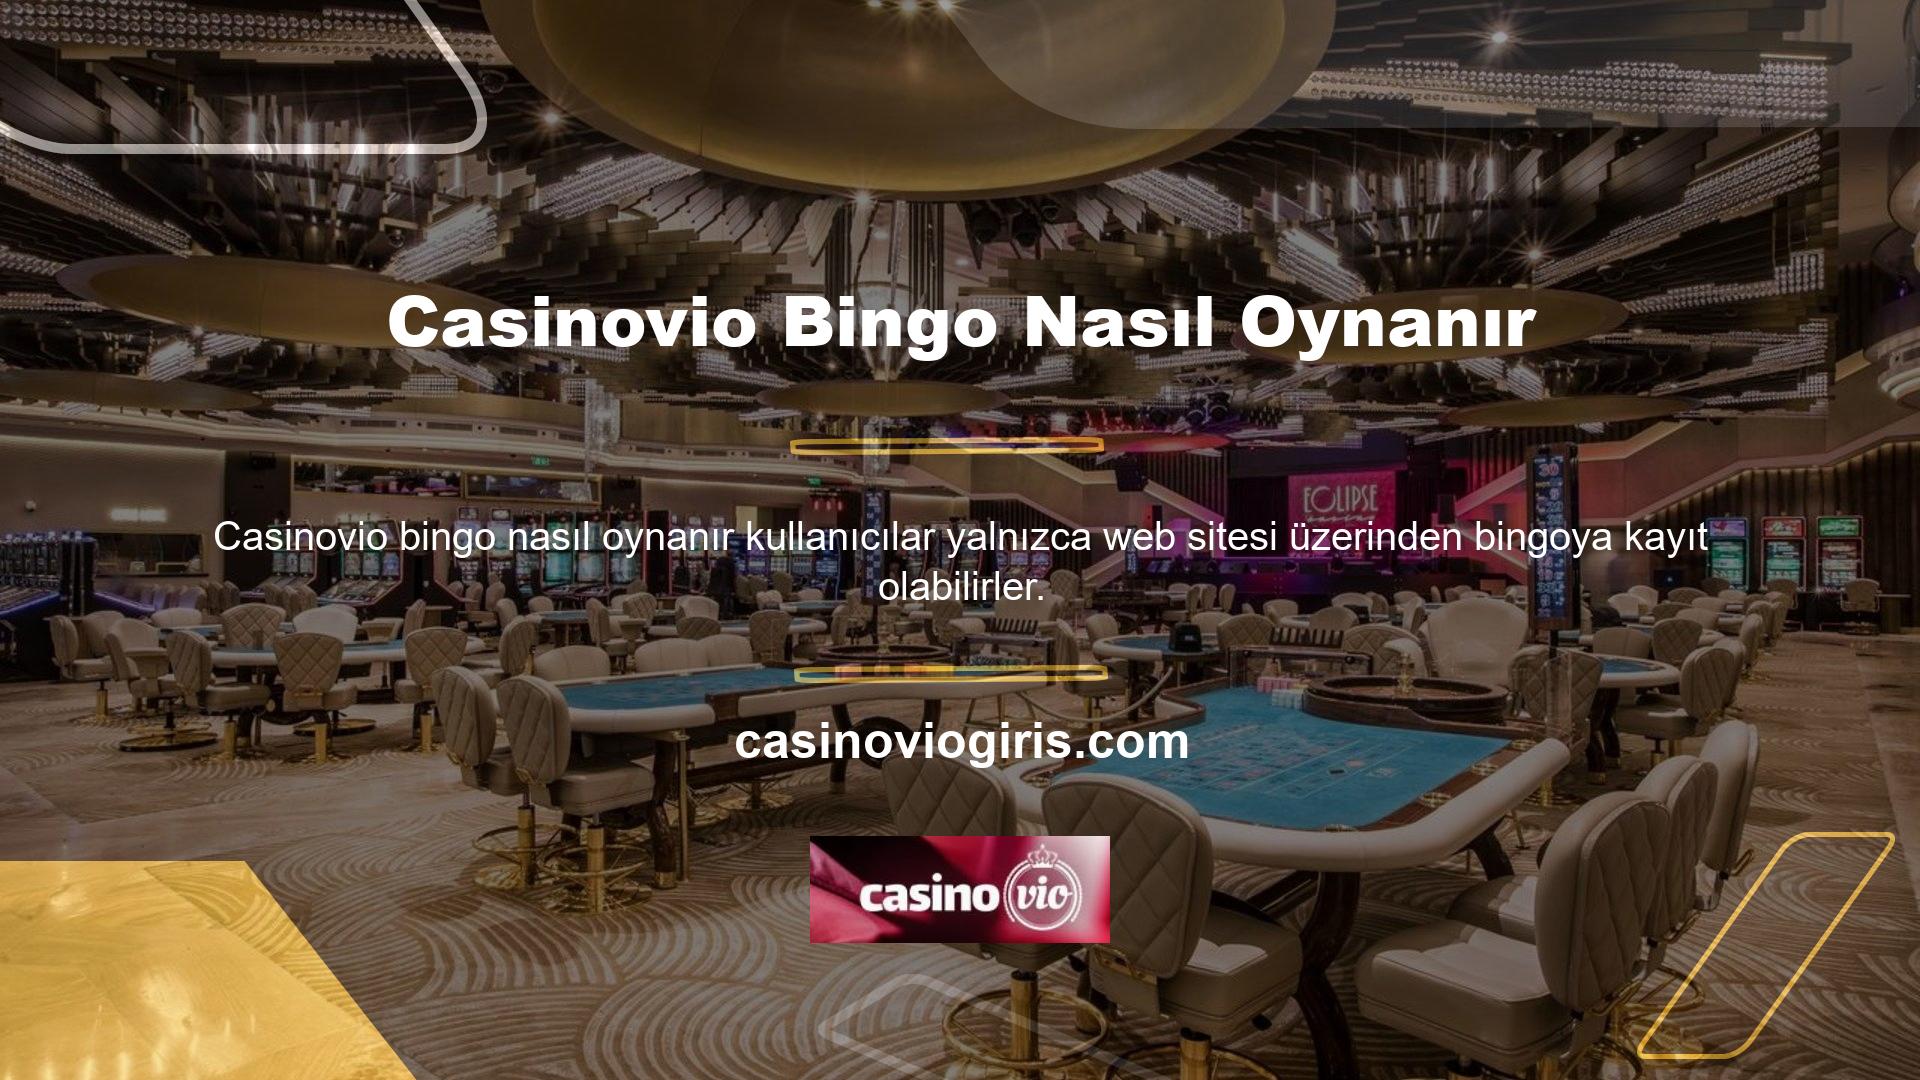 Bu gibi durumlarda kullanıcılar Casinovio Bingonun nasıl oynanacağını merak edebilirler